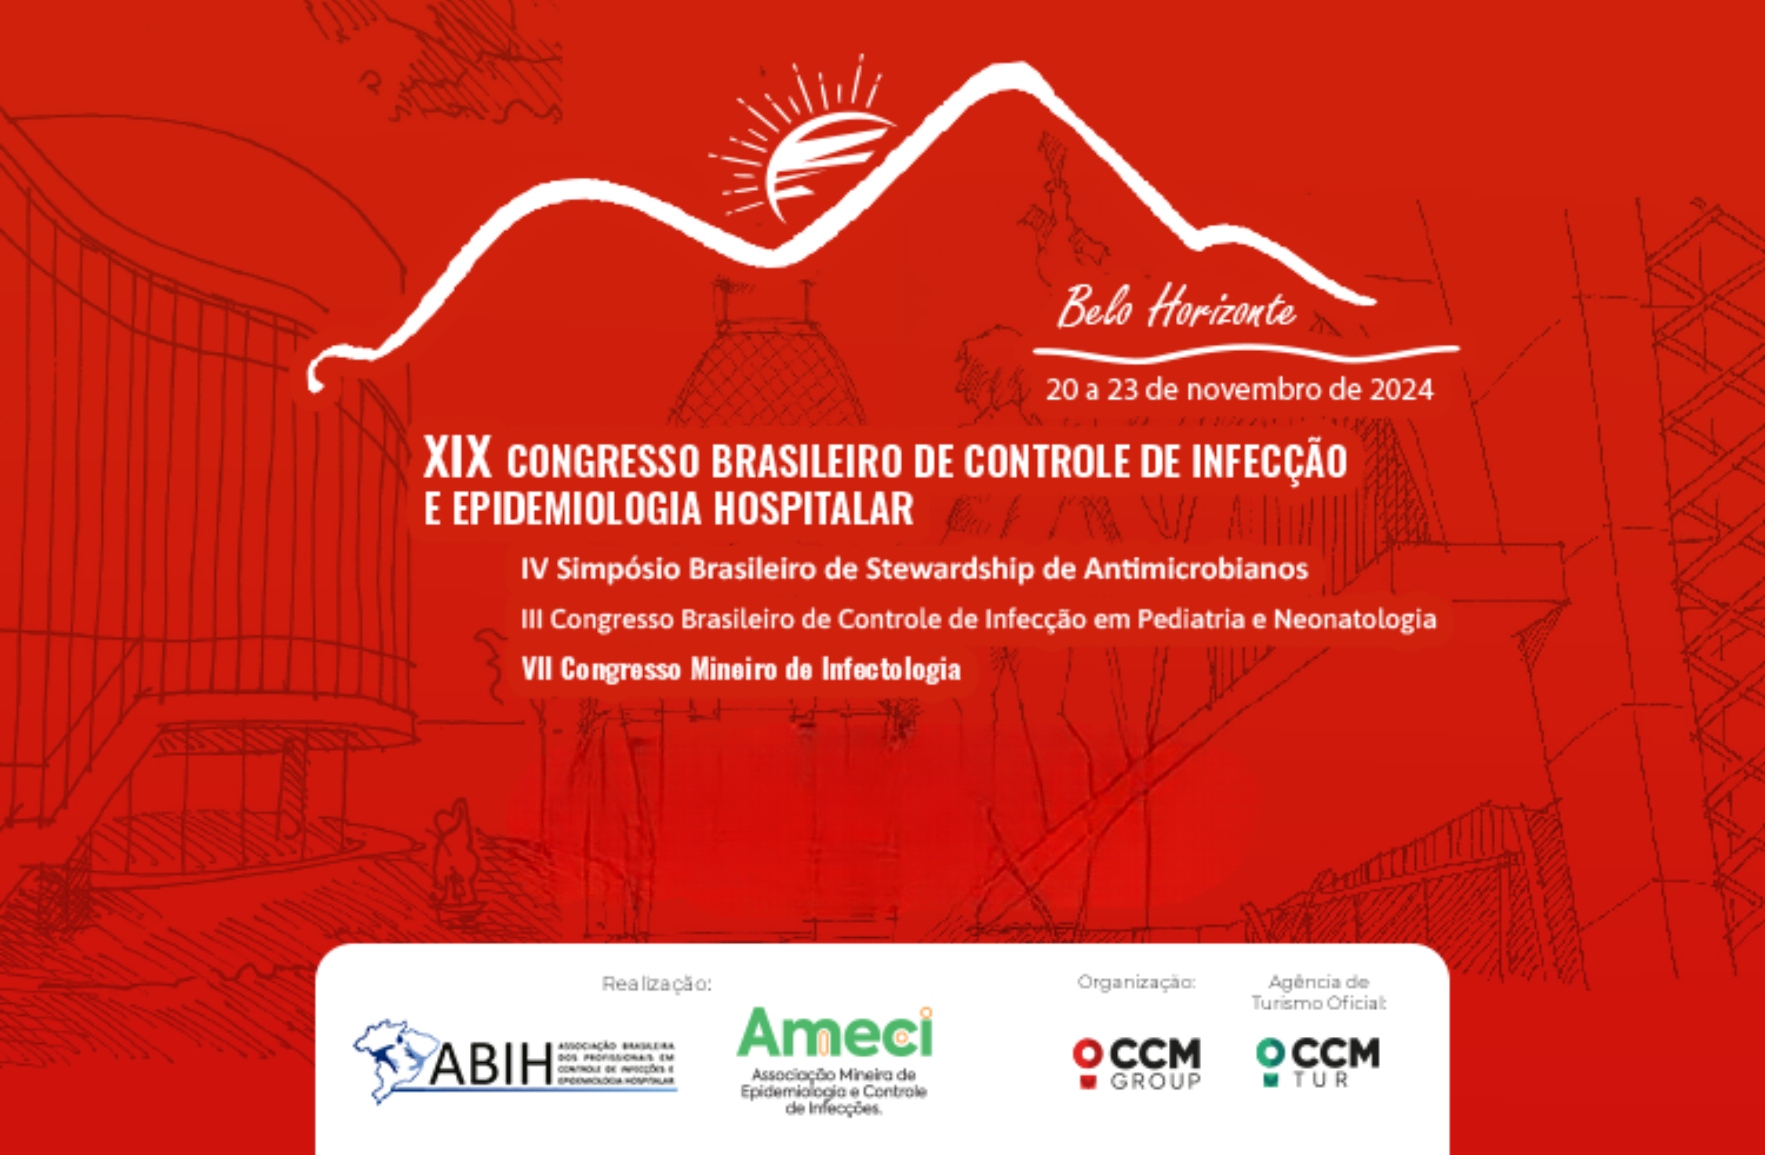 XIX Congresso Brasileiro de Controle de Infecção e Epidemiologia Hospitalar